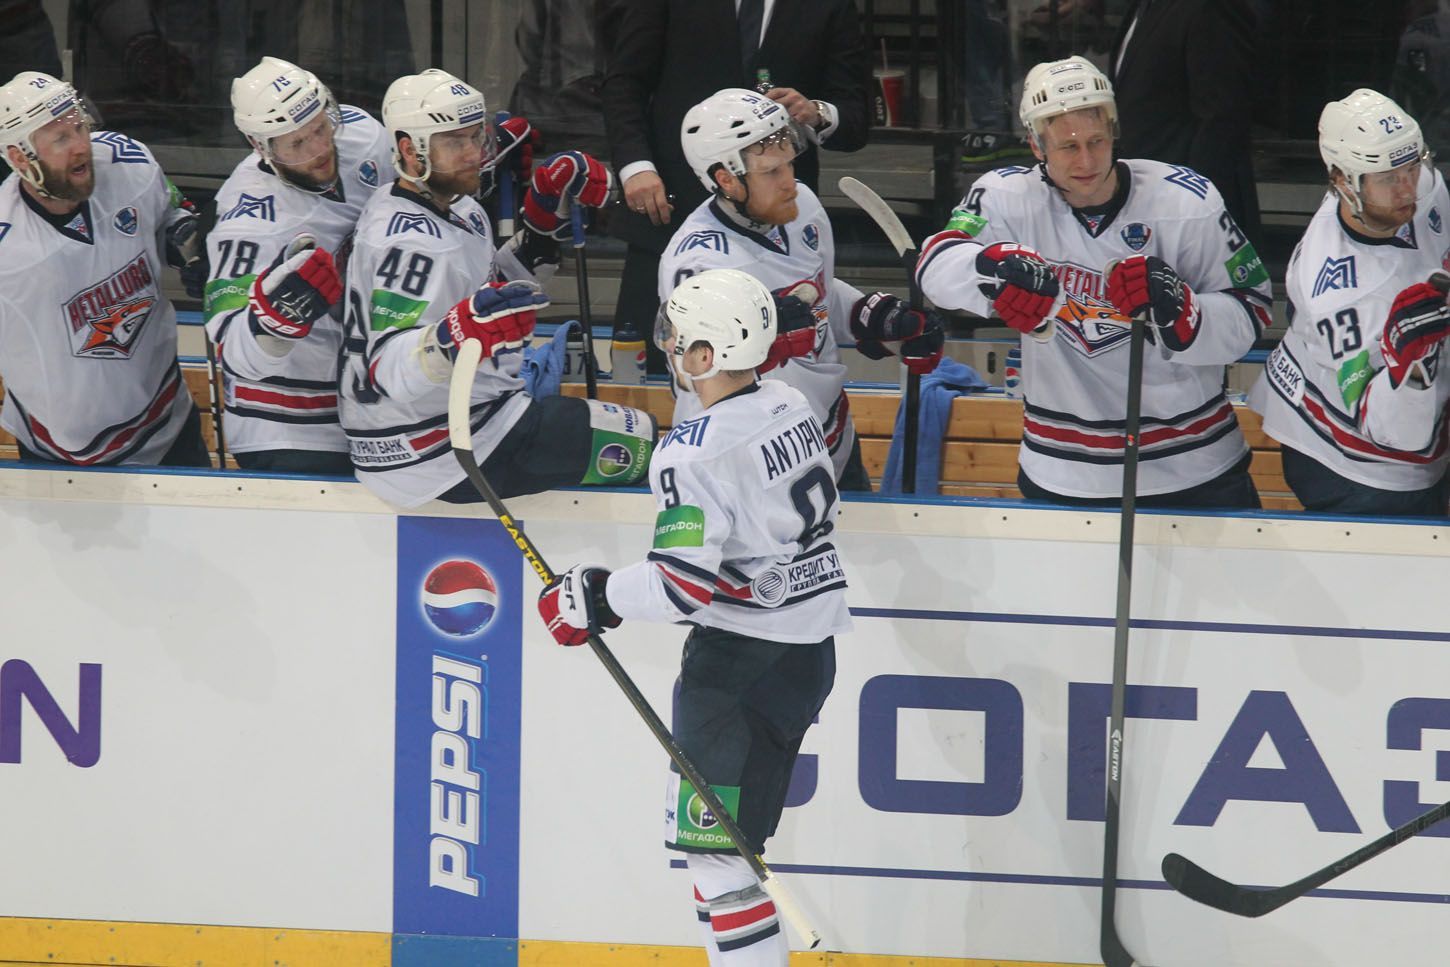 Lev Praha vs. Magnitogorsk, čtvrté finále KHL v O2 aréně (Antipin)